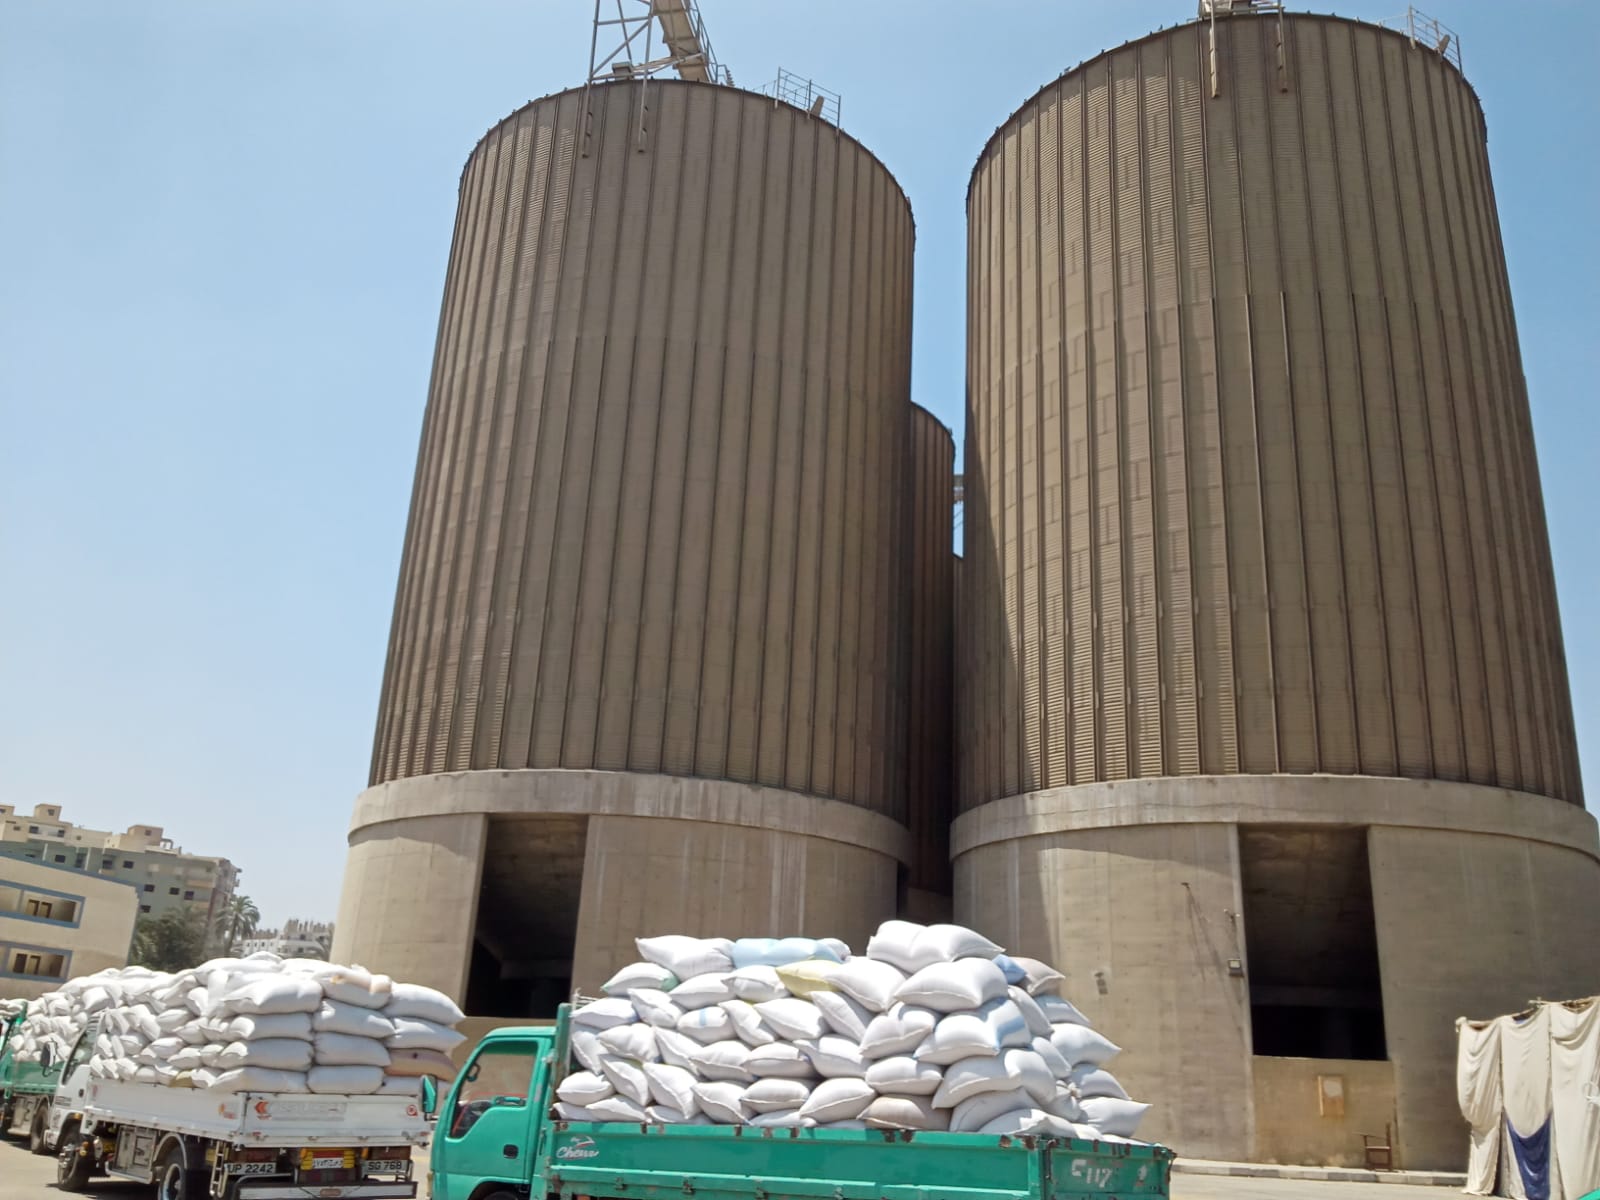 الرئيس التنفيذى لشركة مطاحن مصر الوسطى موسم القمح مبشر هذا العام وعمليات التوريد من المزراعين للمطاحن مستمرة على مدار 24ساعة دون انقطاع